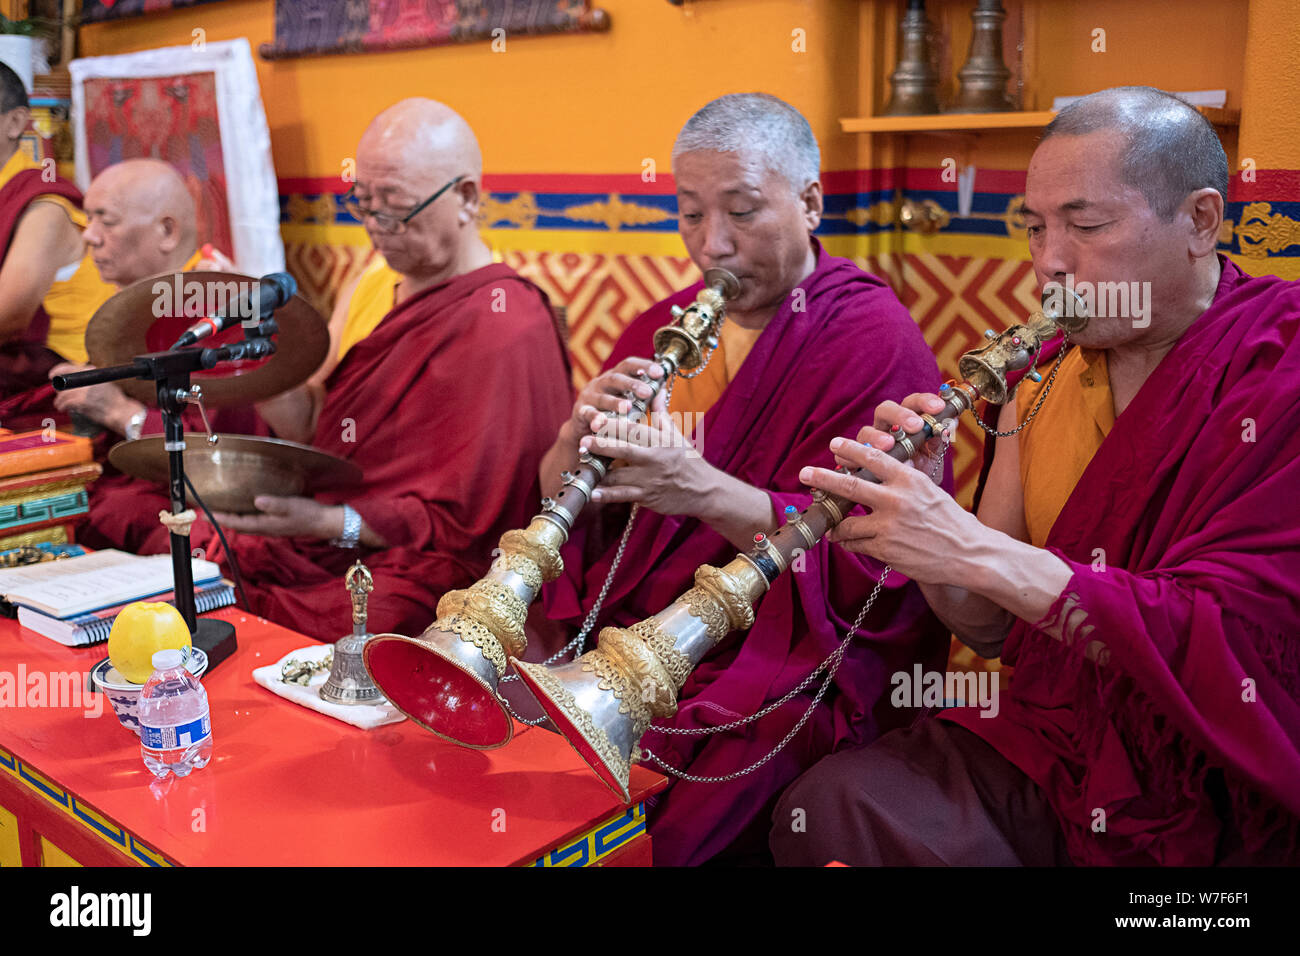 Les moines bouddhistes népalais jouer des instruments traditionnels, y compris l'gyaling horn lors d'une prière publique. Au temple Kyidug Sherpa dans NYC. Banque D'Images